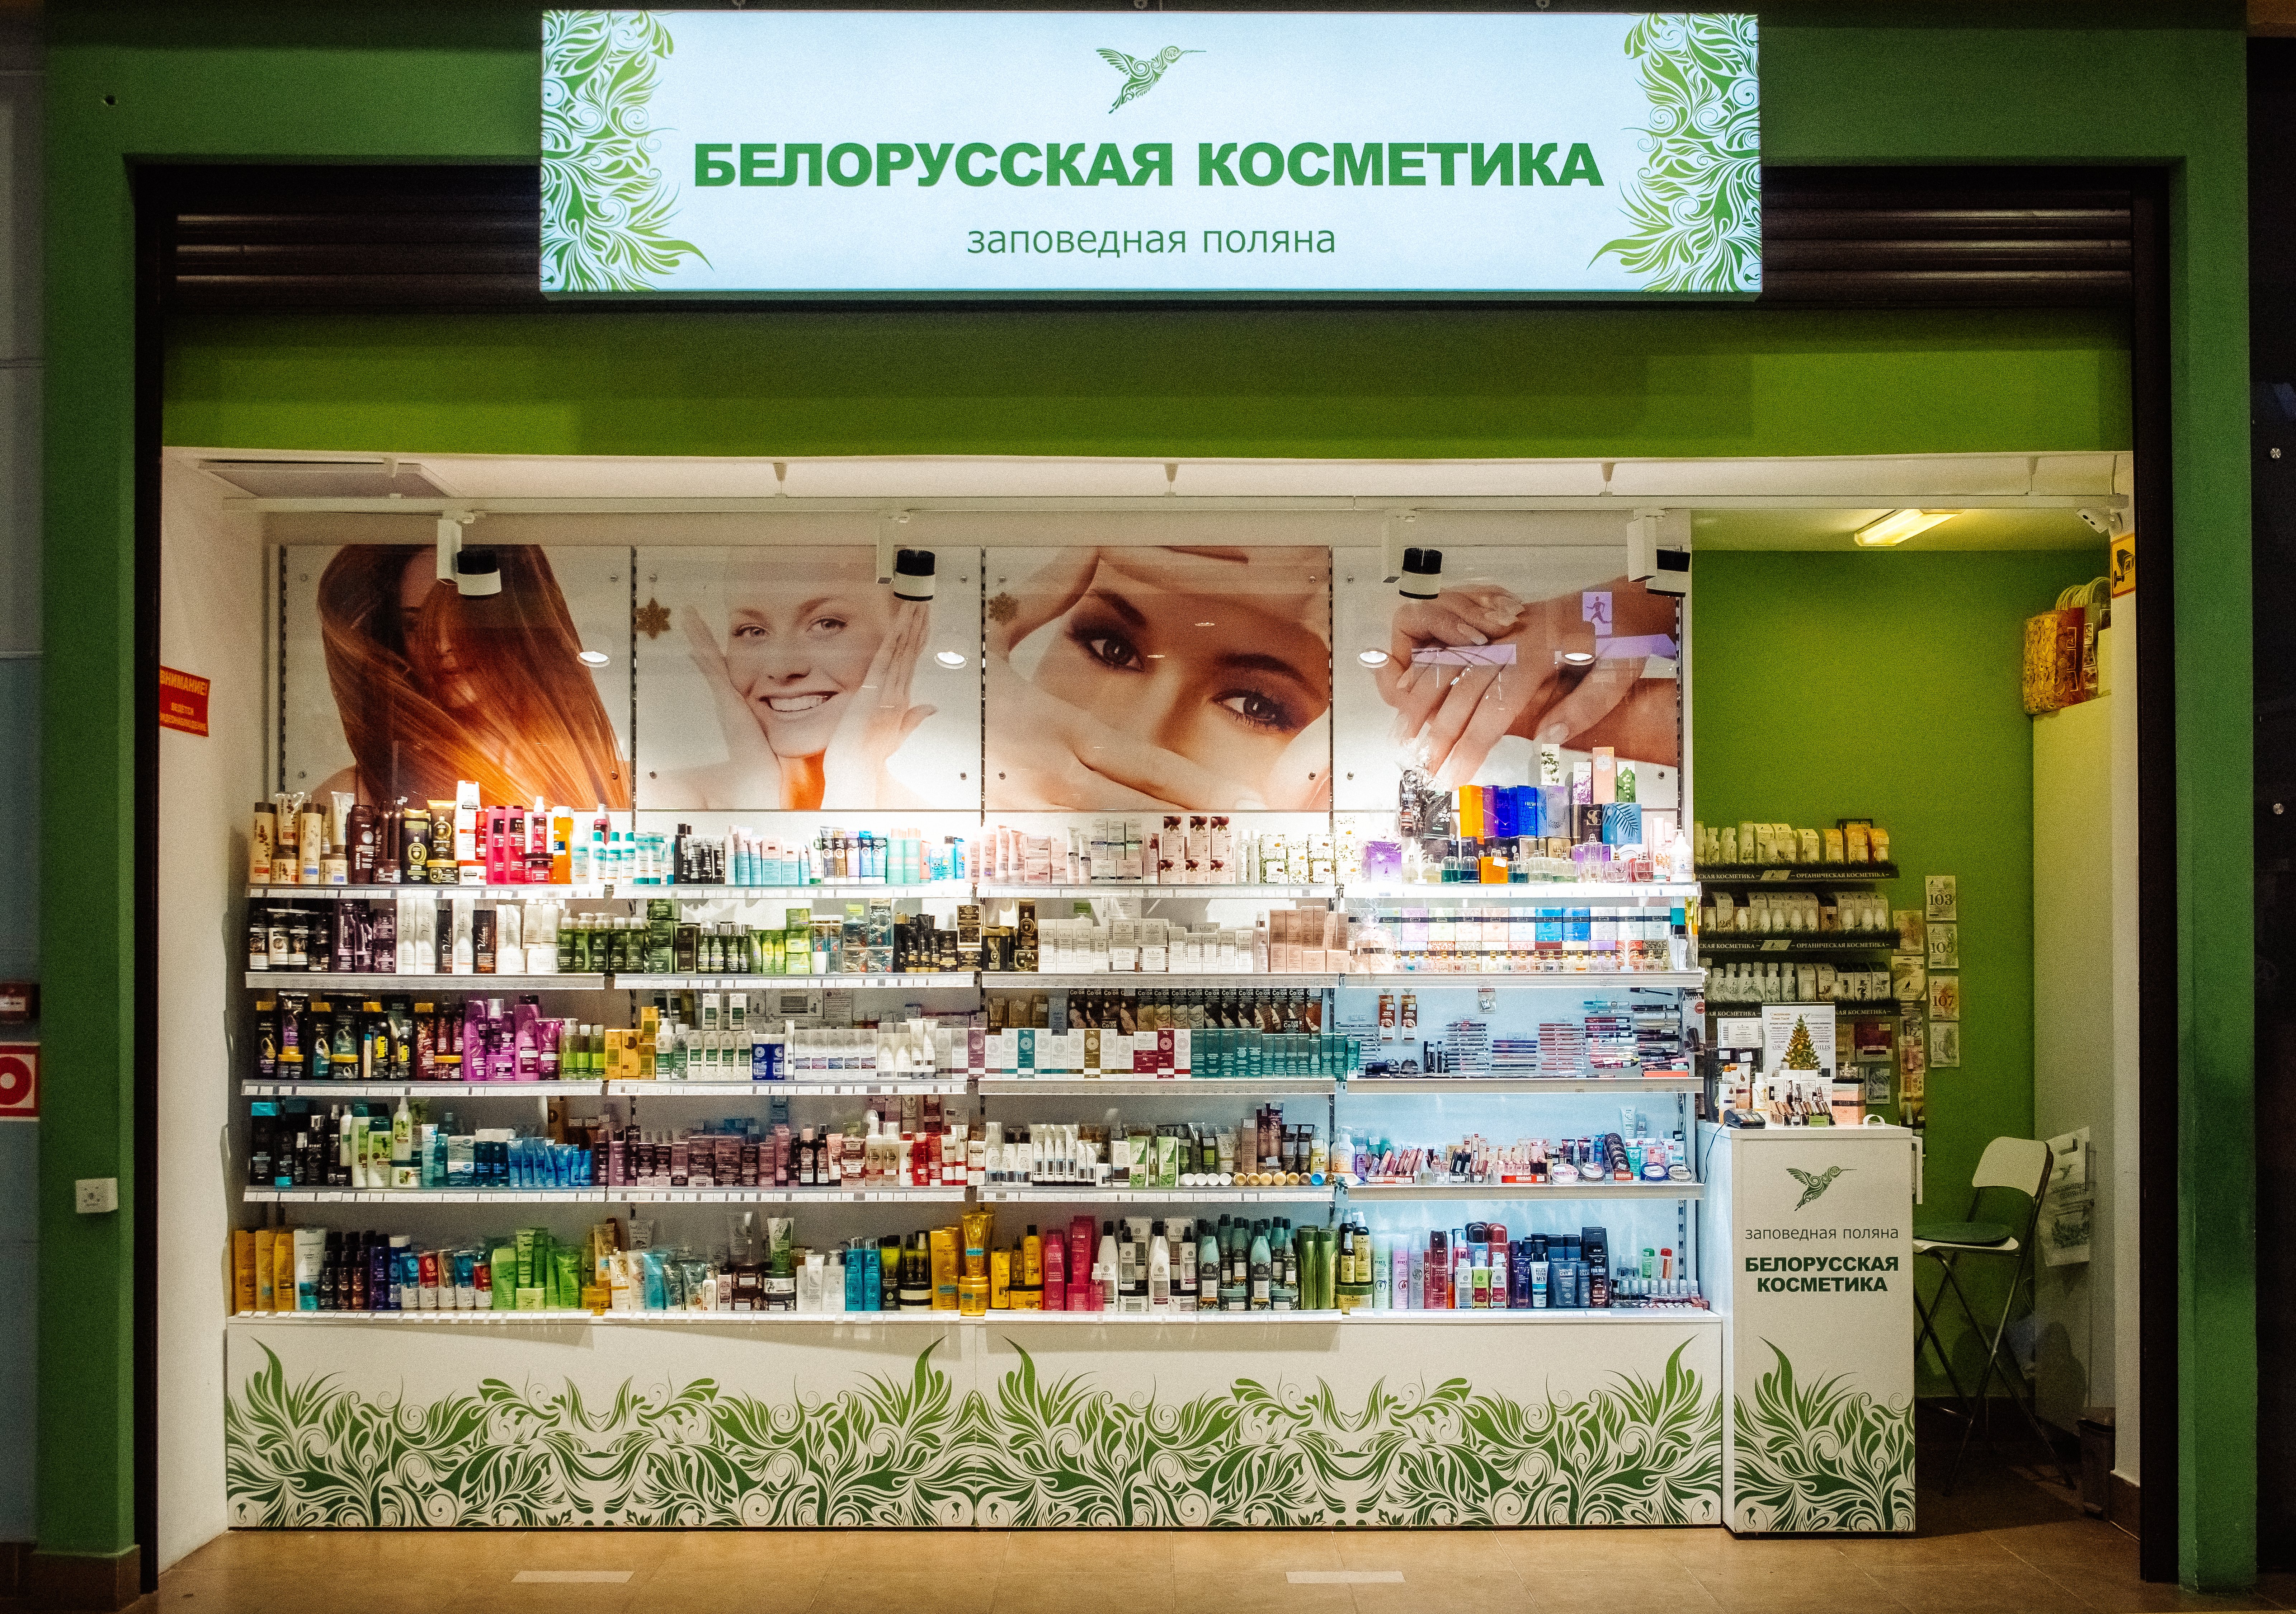 Где В Москве Можно Купить Белорусскую Косметику